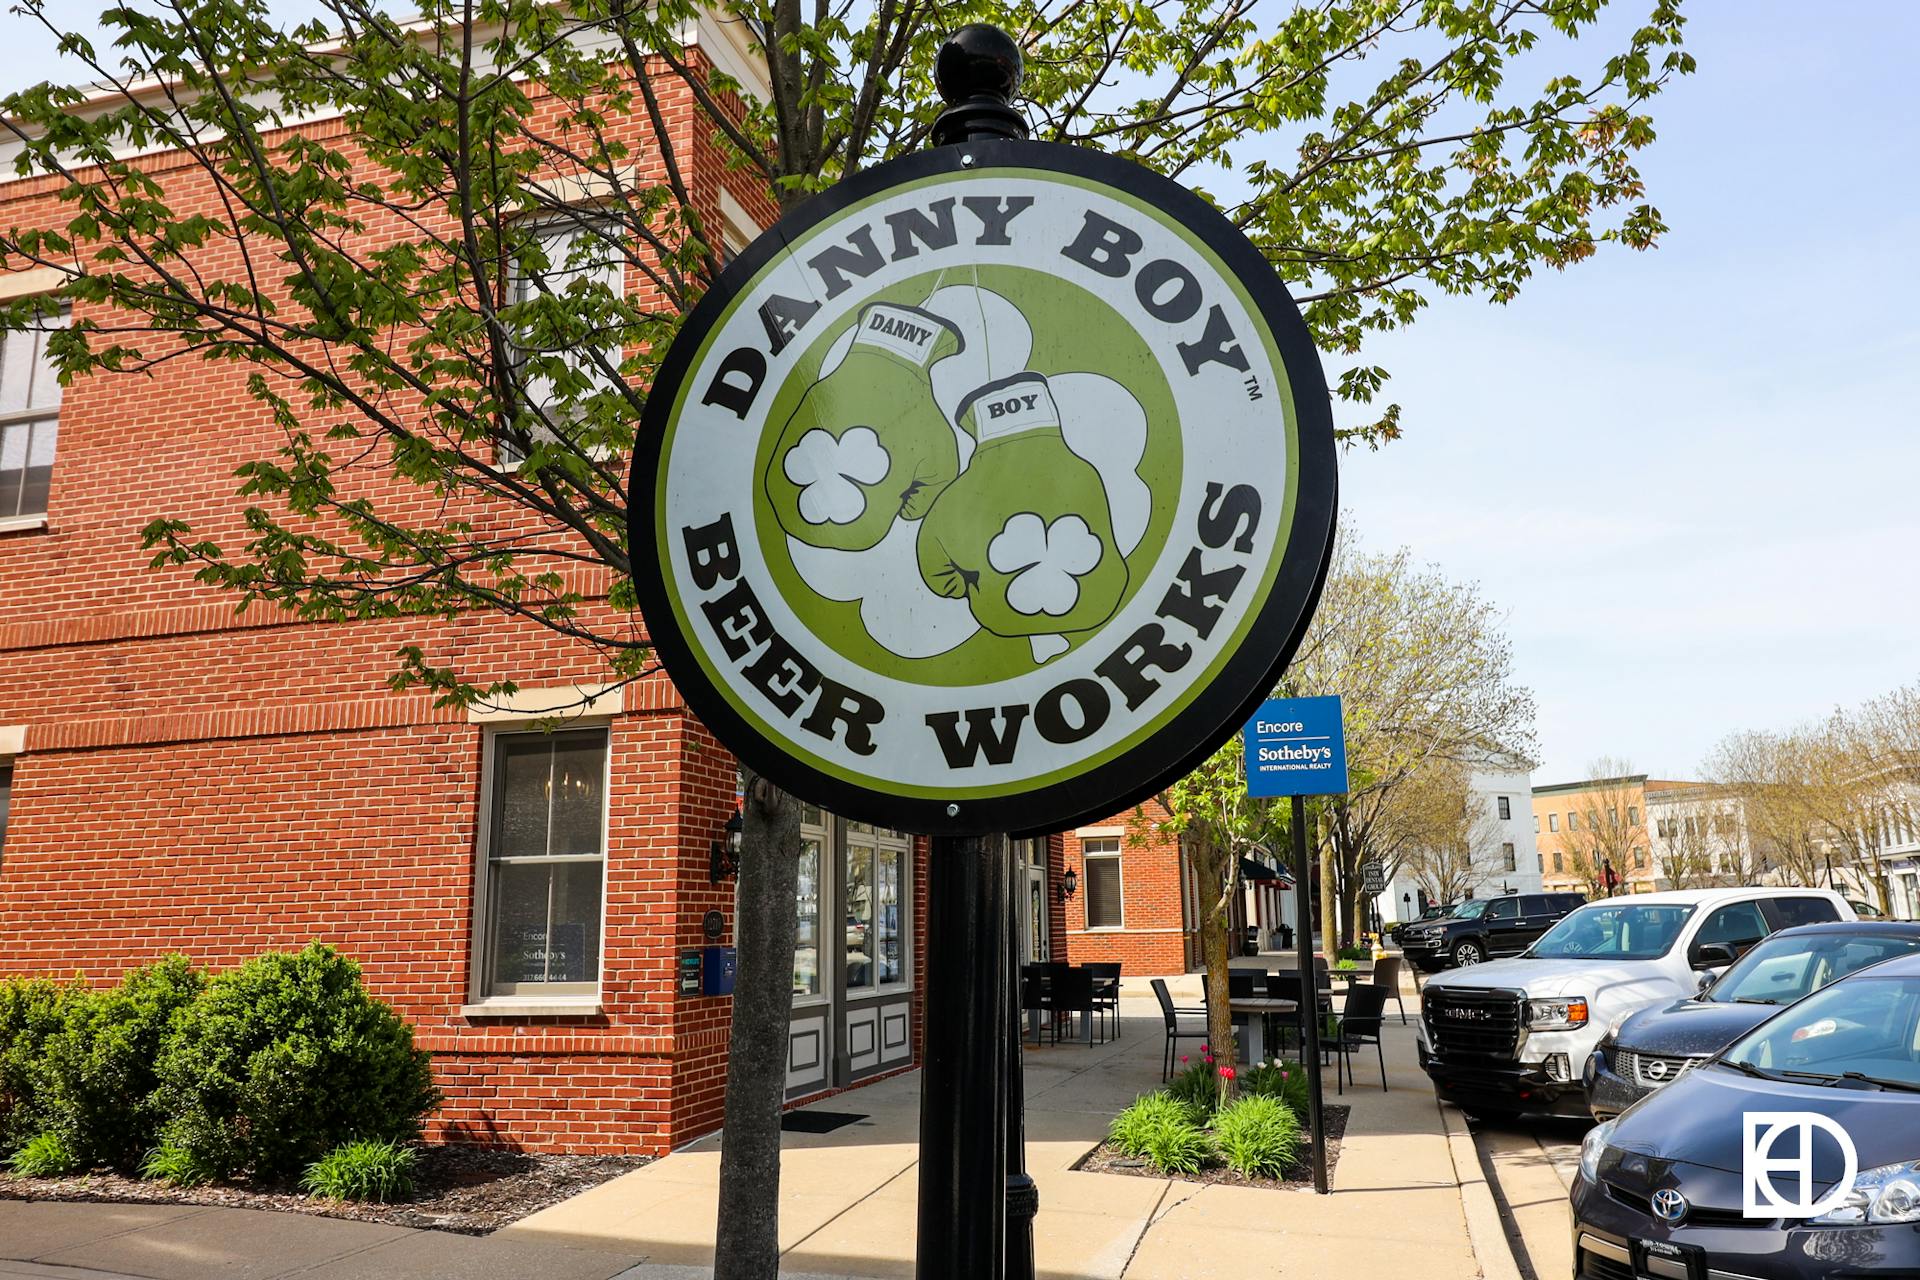 Street-level sign for Danny Boy Beer Works